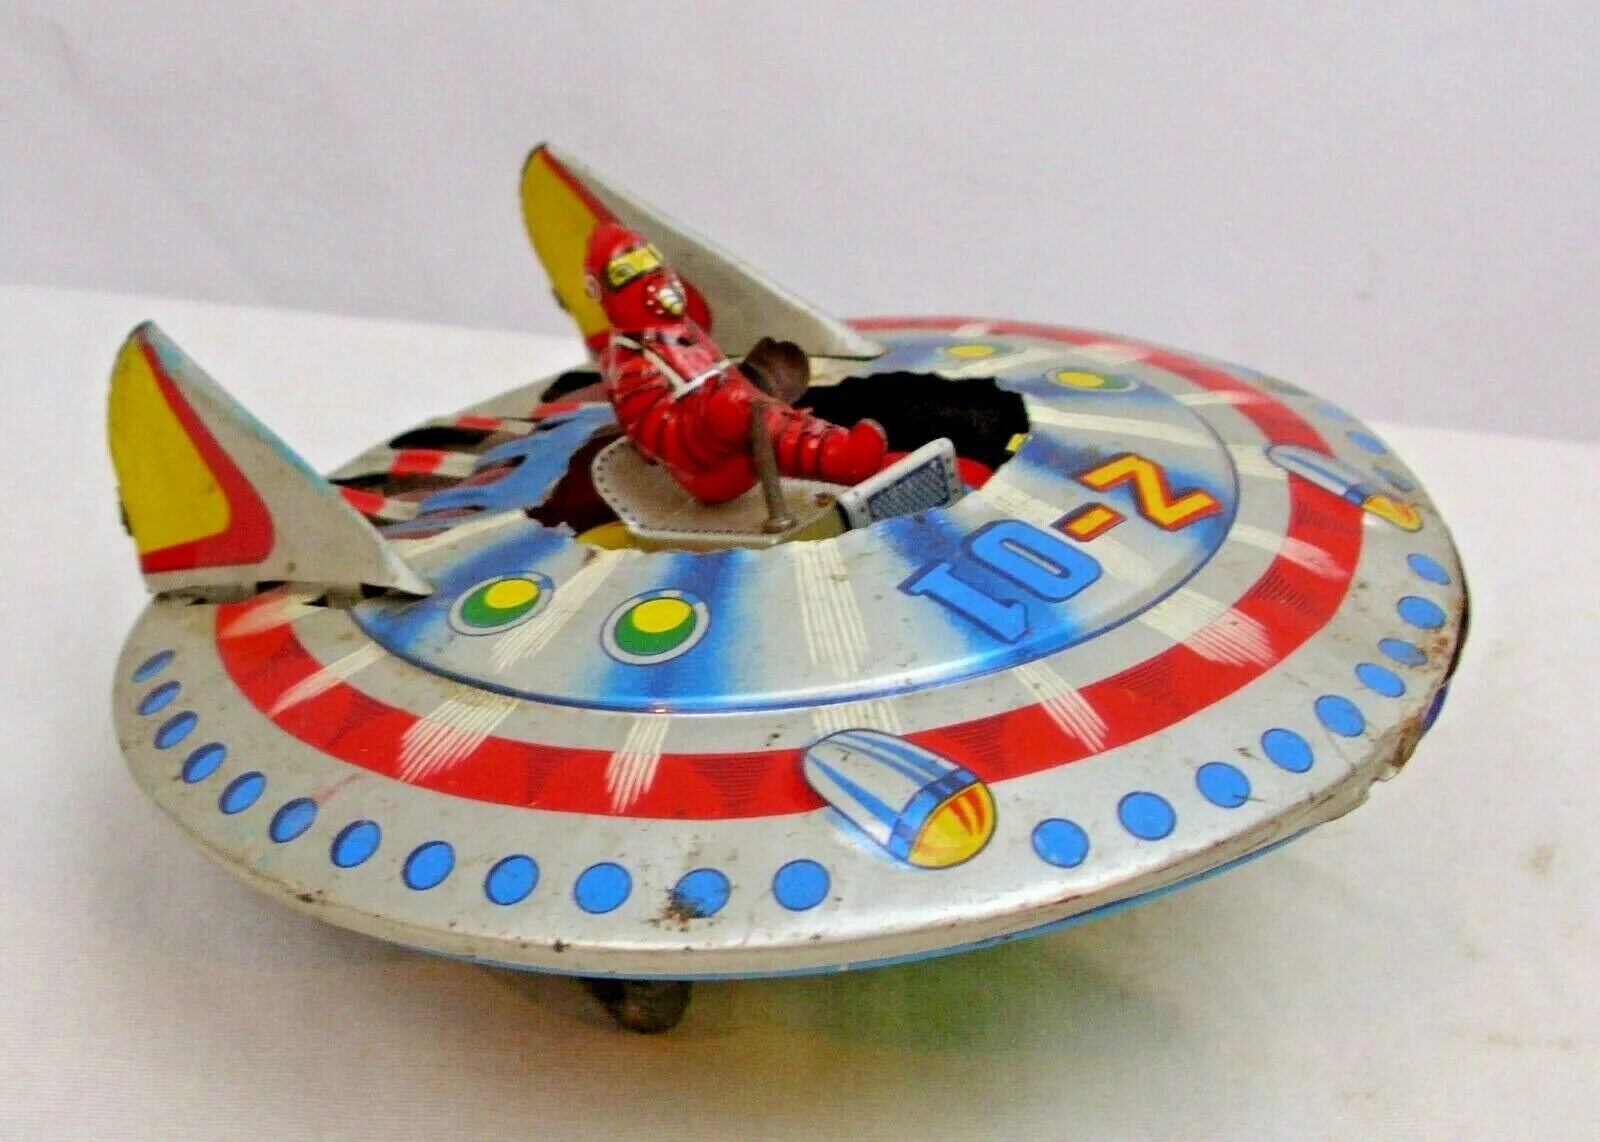 Flying toy. Игрушка UFO летающая тарелка. Flying Saucer Toy. Механизм Fly Flying Saucer игрушка. Игрушка Тишин папа тарелка летающая.